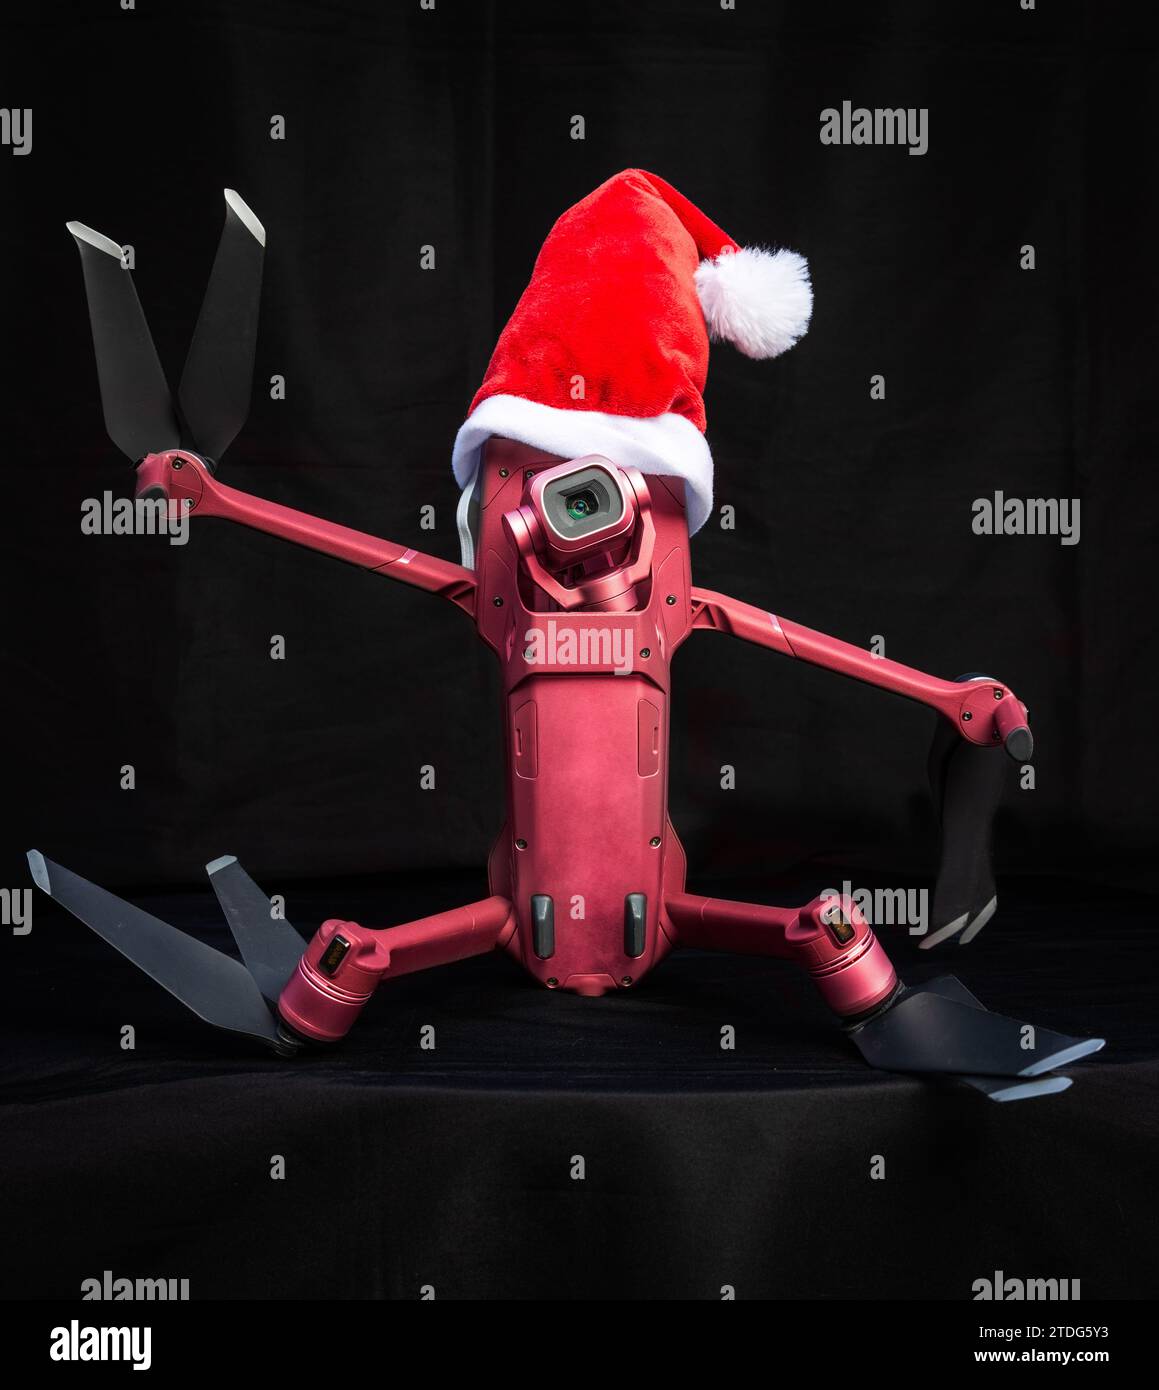 Porträt einer Quadcopter-Drohne mit weihnachtsmütze als Weihnachtskonzept auf dunklem Hintergrund, der das Friedenszeichen gibt. Stockfoto